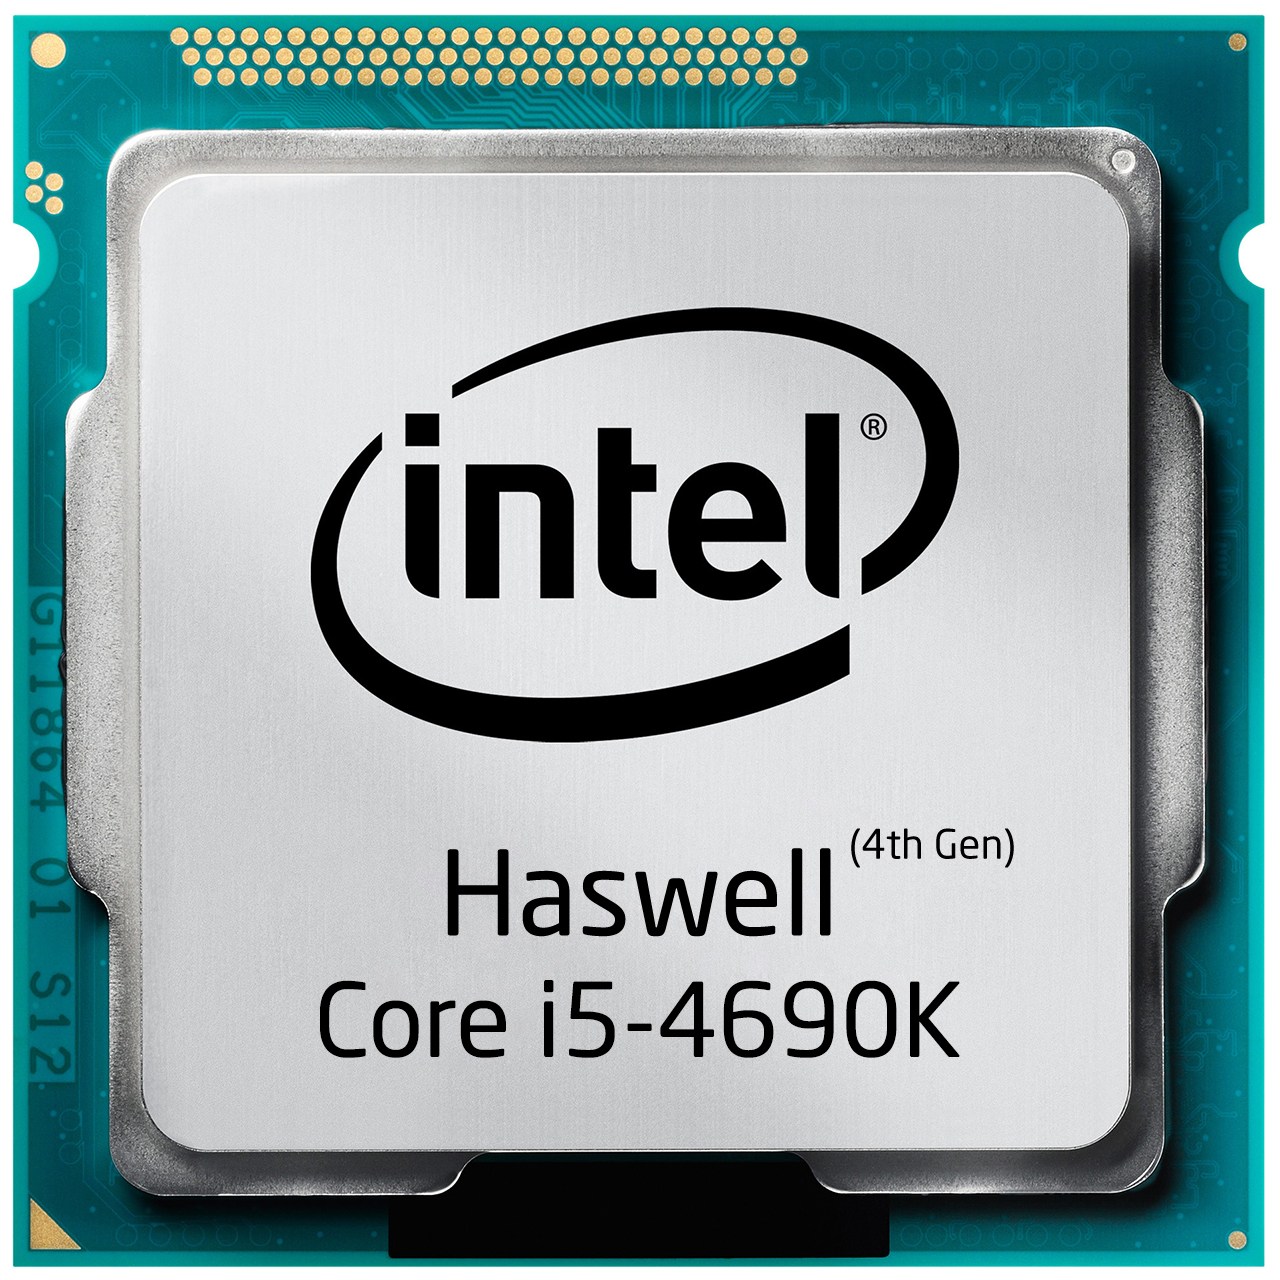 پردازنده مرکزی اینتل سری Haswell مدل Core i5-4690K